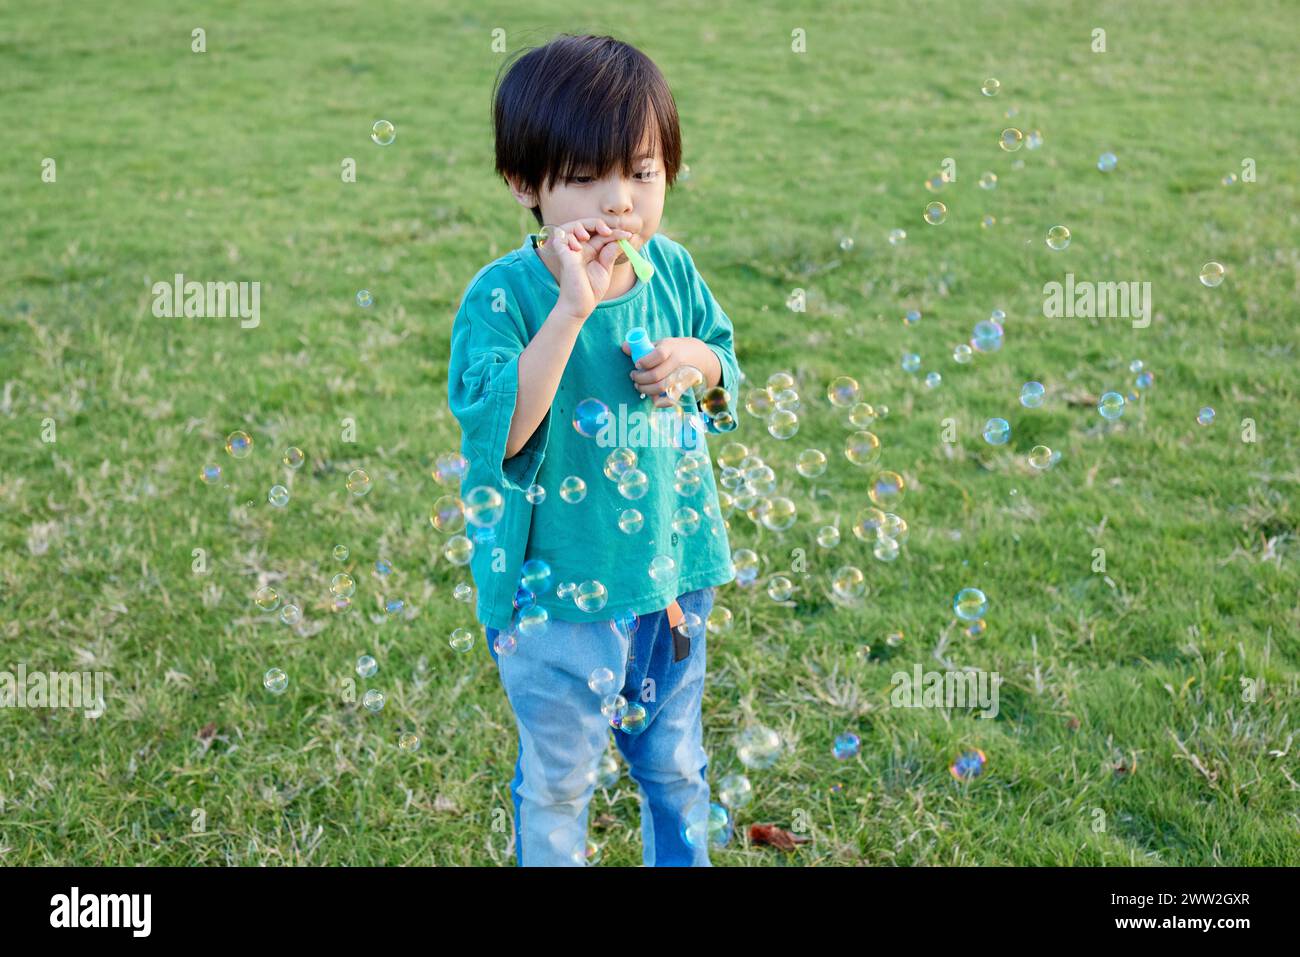 Enfant jouant dans un champ Banque D'Images